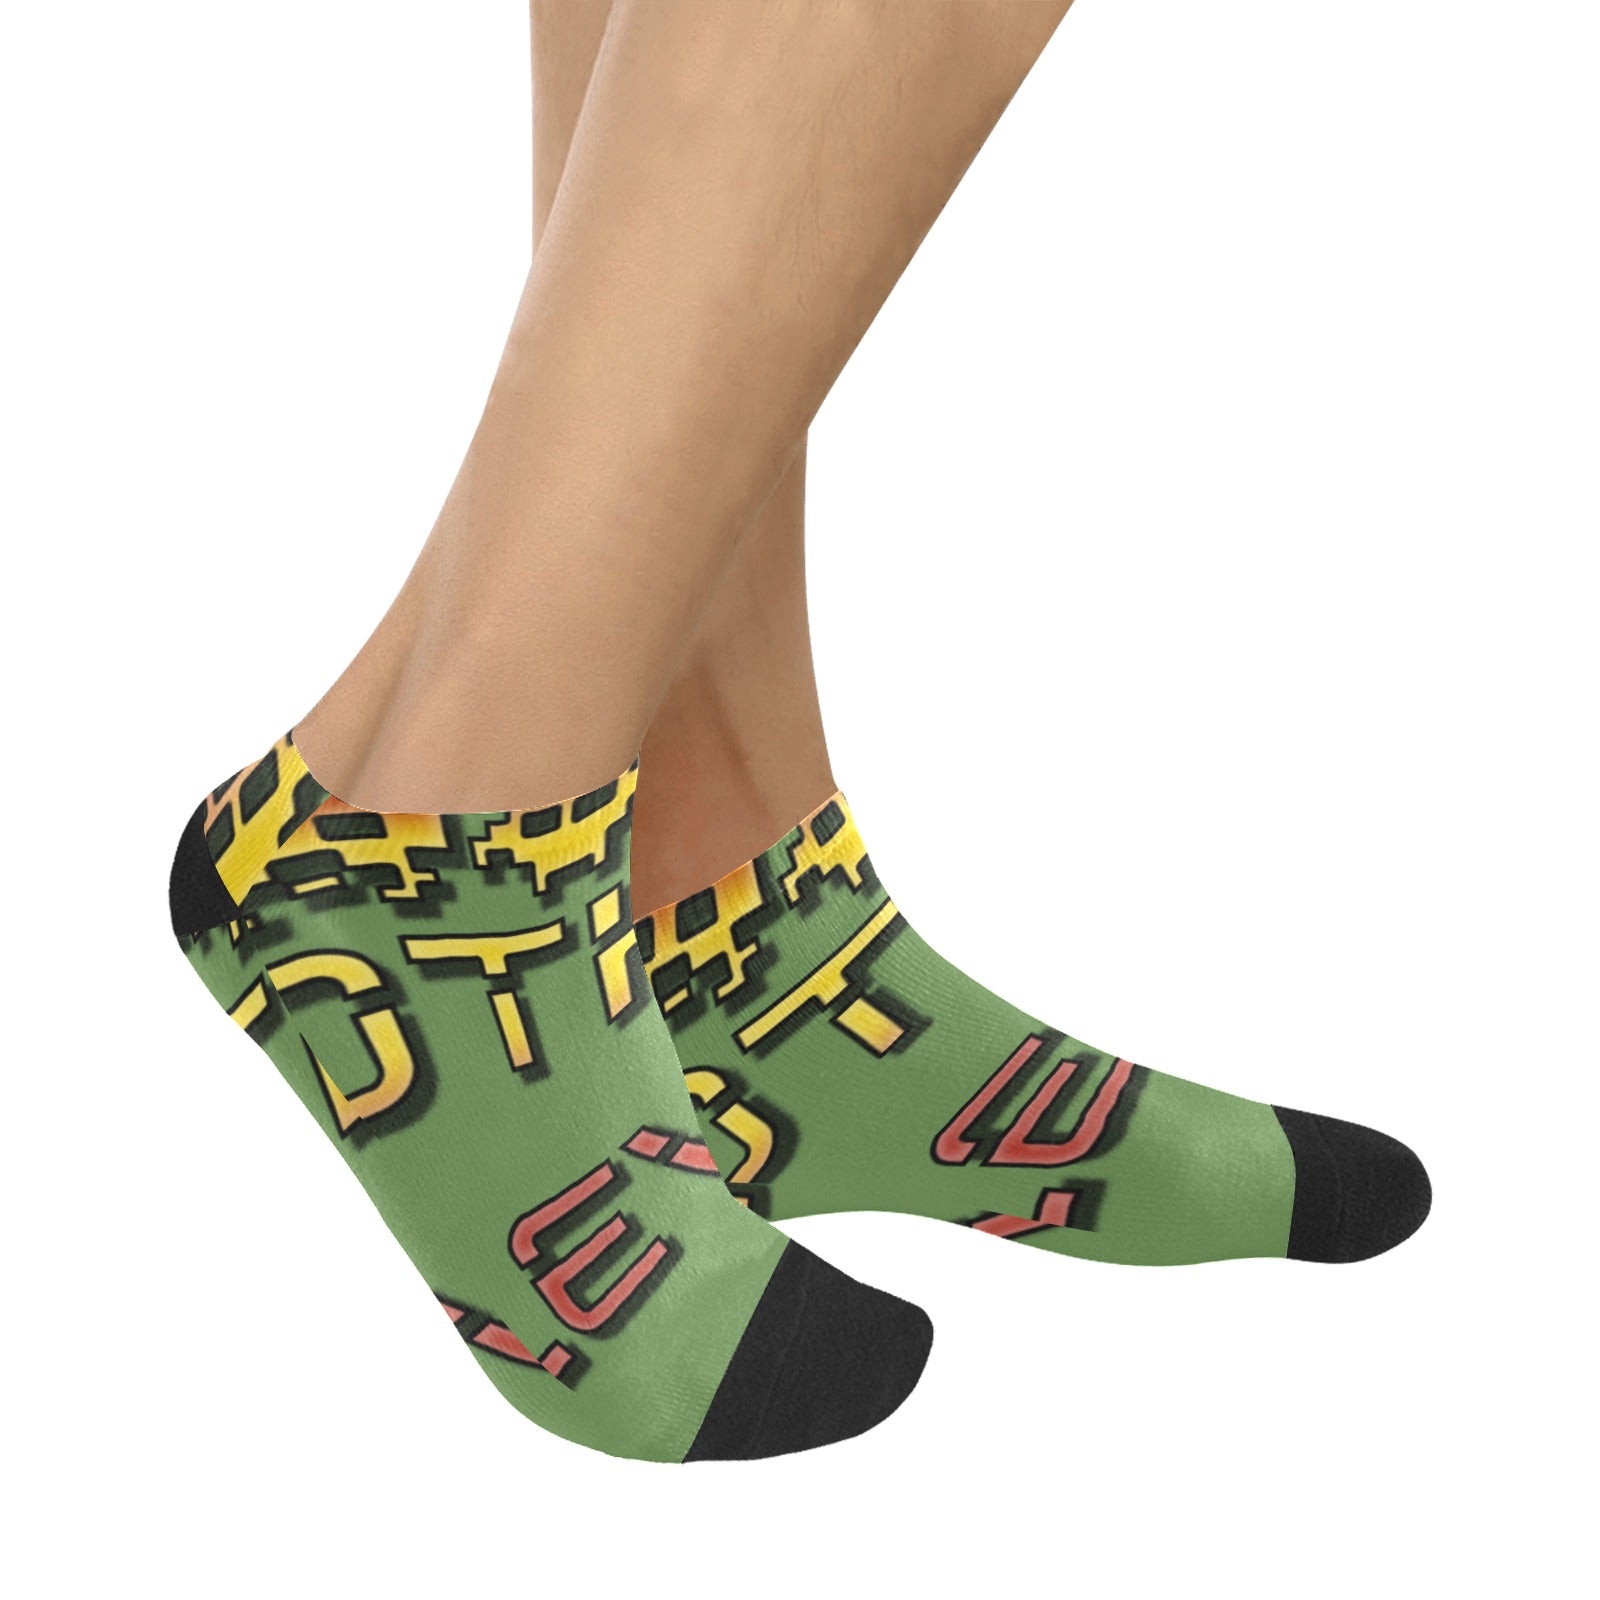 fz men's levels ankle socks one size / fz levels socks - green men's ankle socks